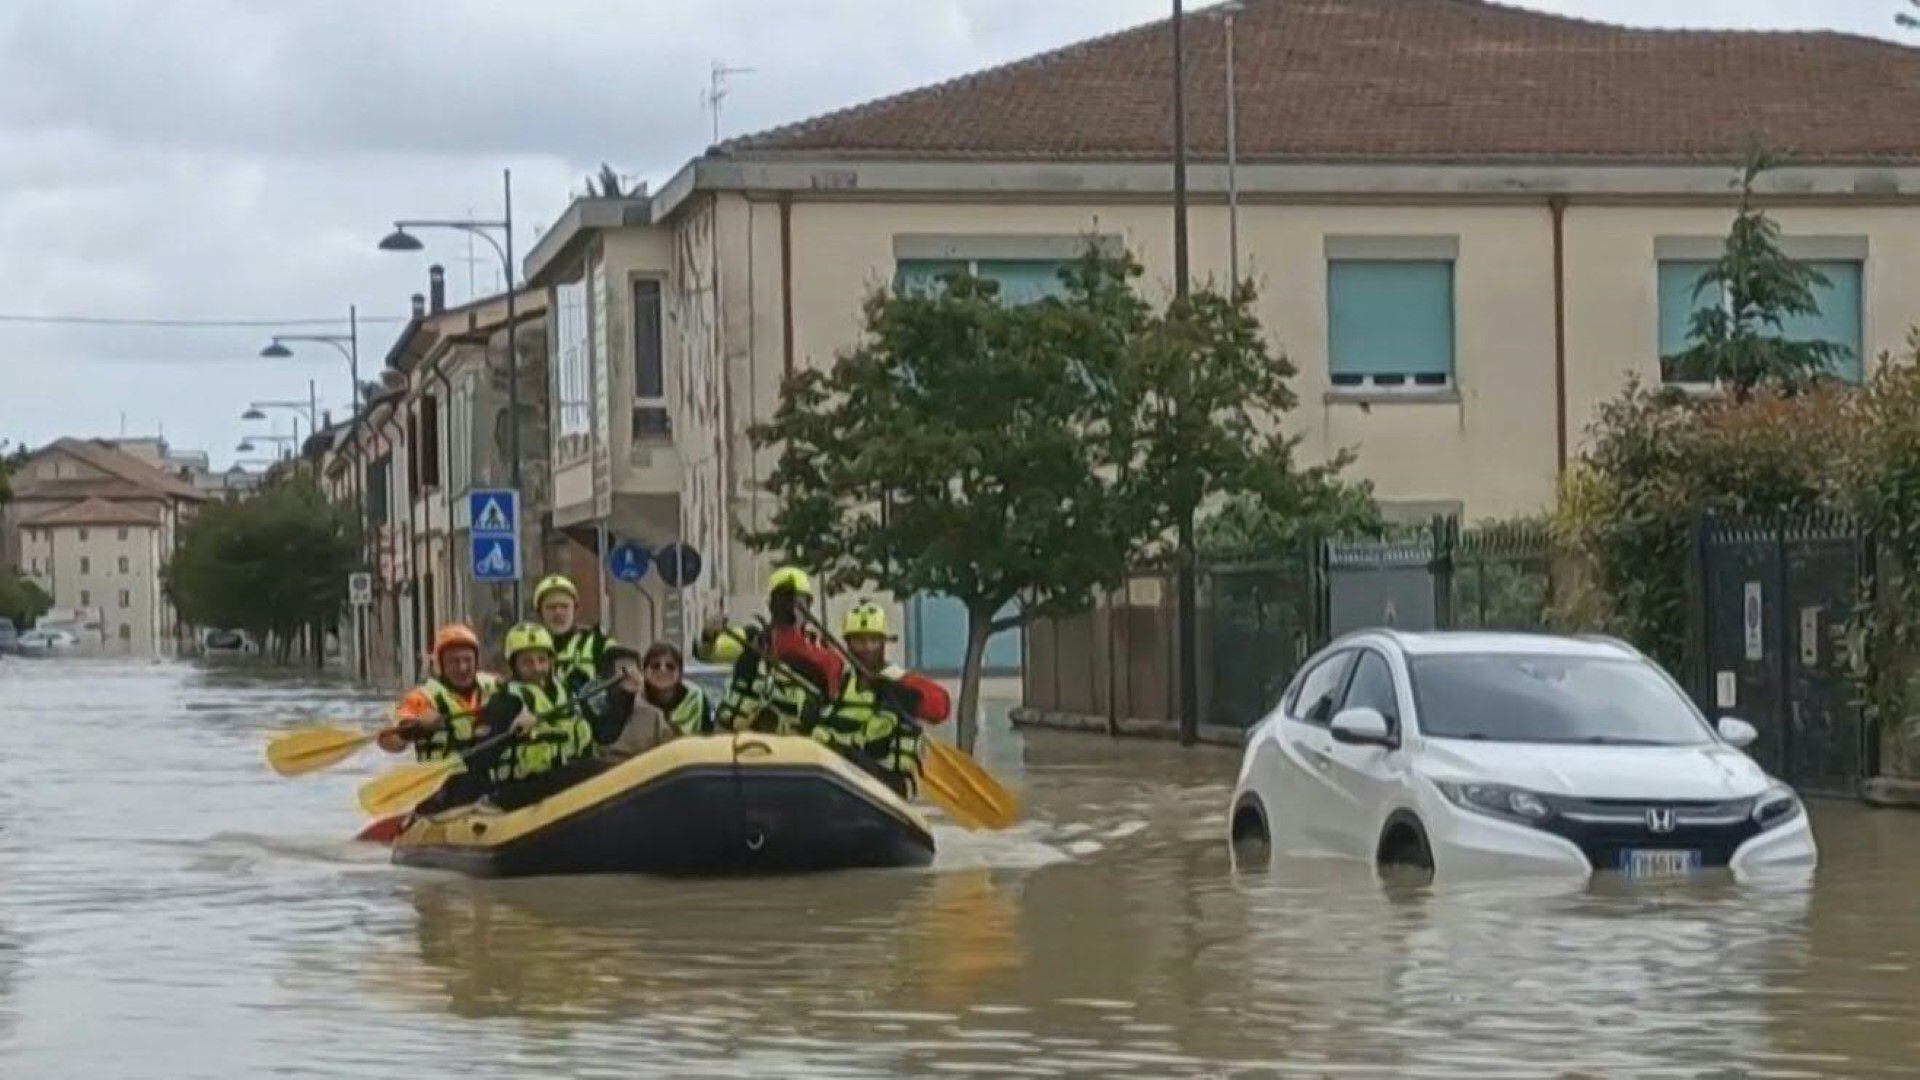 Las autoridades informaron que debido a las intensas lluvias en las llanuras de Emilia-Romaña, aproximadamente 20 ríos se desbordaron de sus cauces. Foto: AFP.